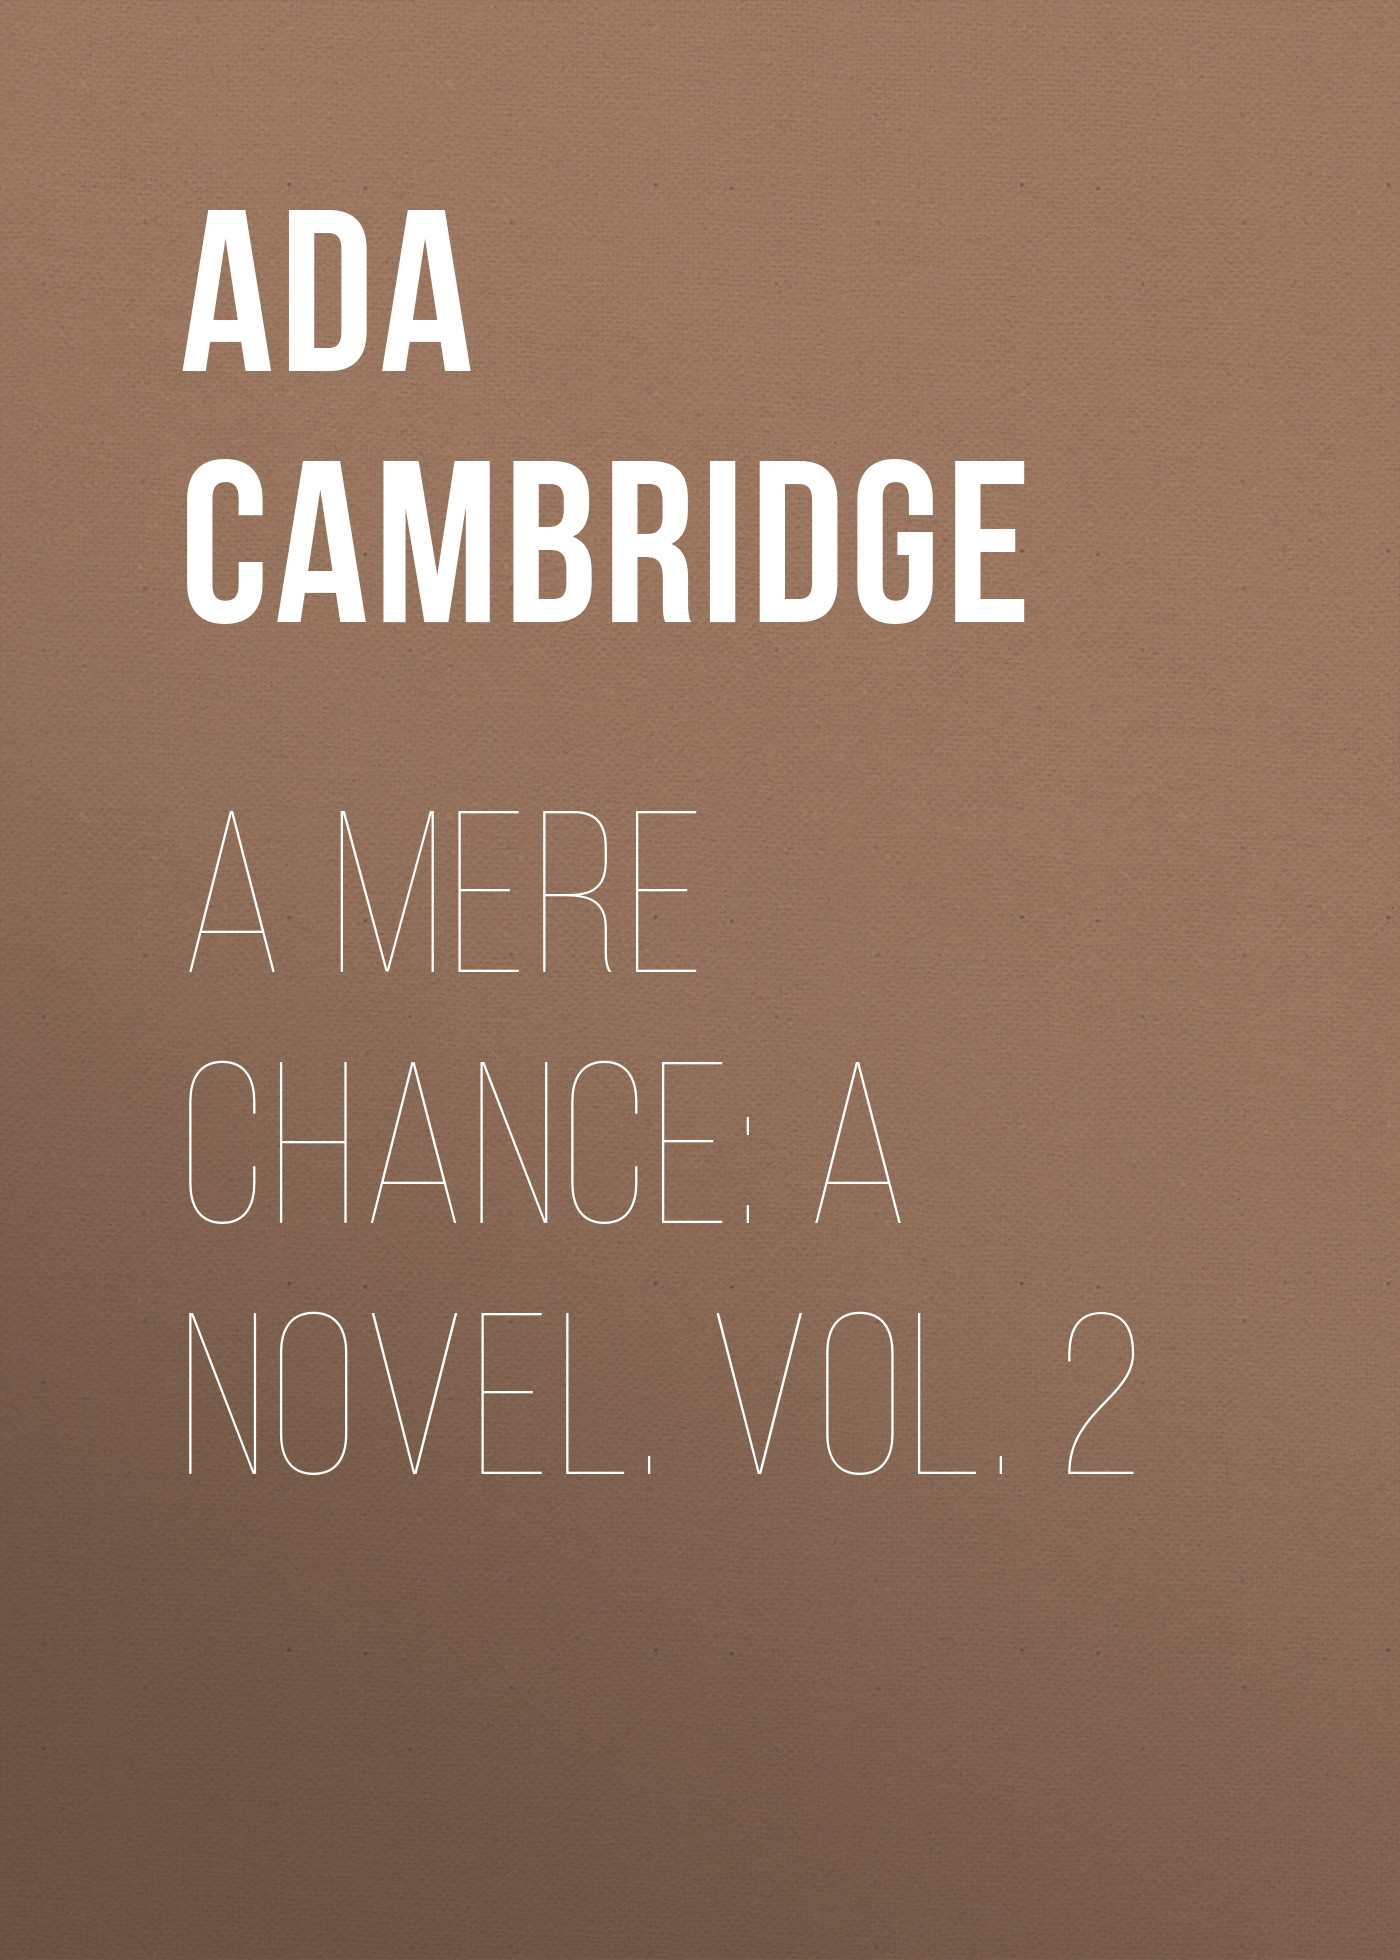 Книга A Mere Chance: A Novel. Vol. 2 из серии , созданная Ada Cambridge, может относится к жанру Зарубежная старинная литература, Зарубежная классика. Стоимость электронной книги A Mere Chance: A Novel. Vol. 2 с идентификатором 24170852 составляет 0.90 руб.